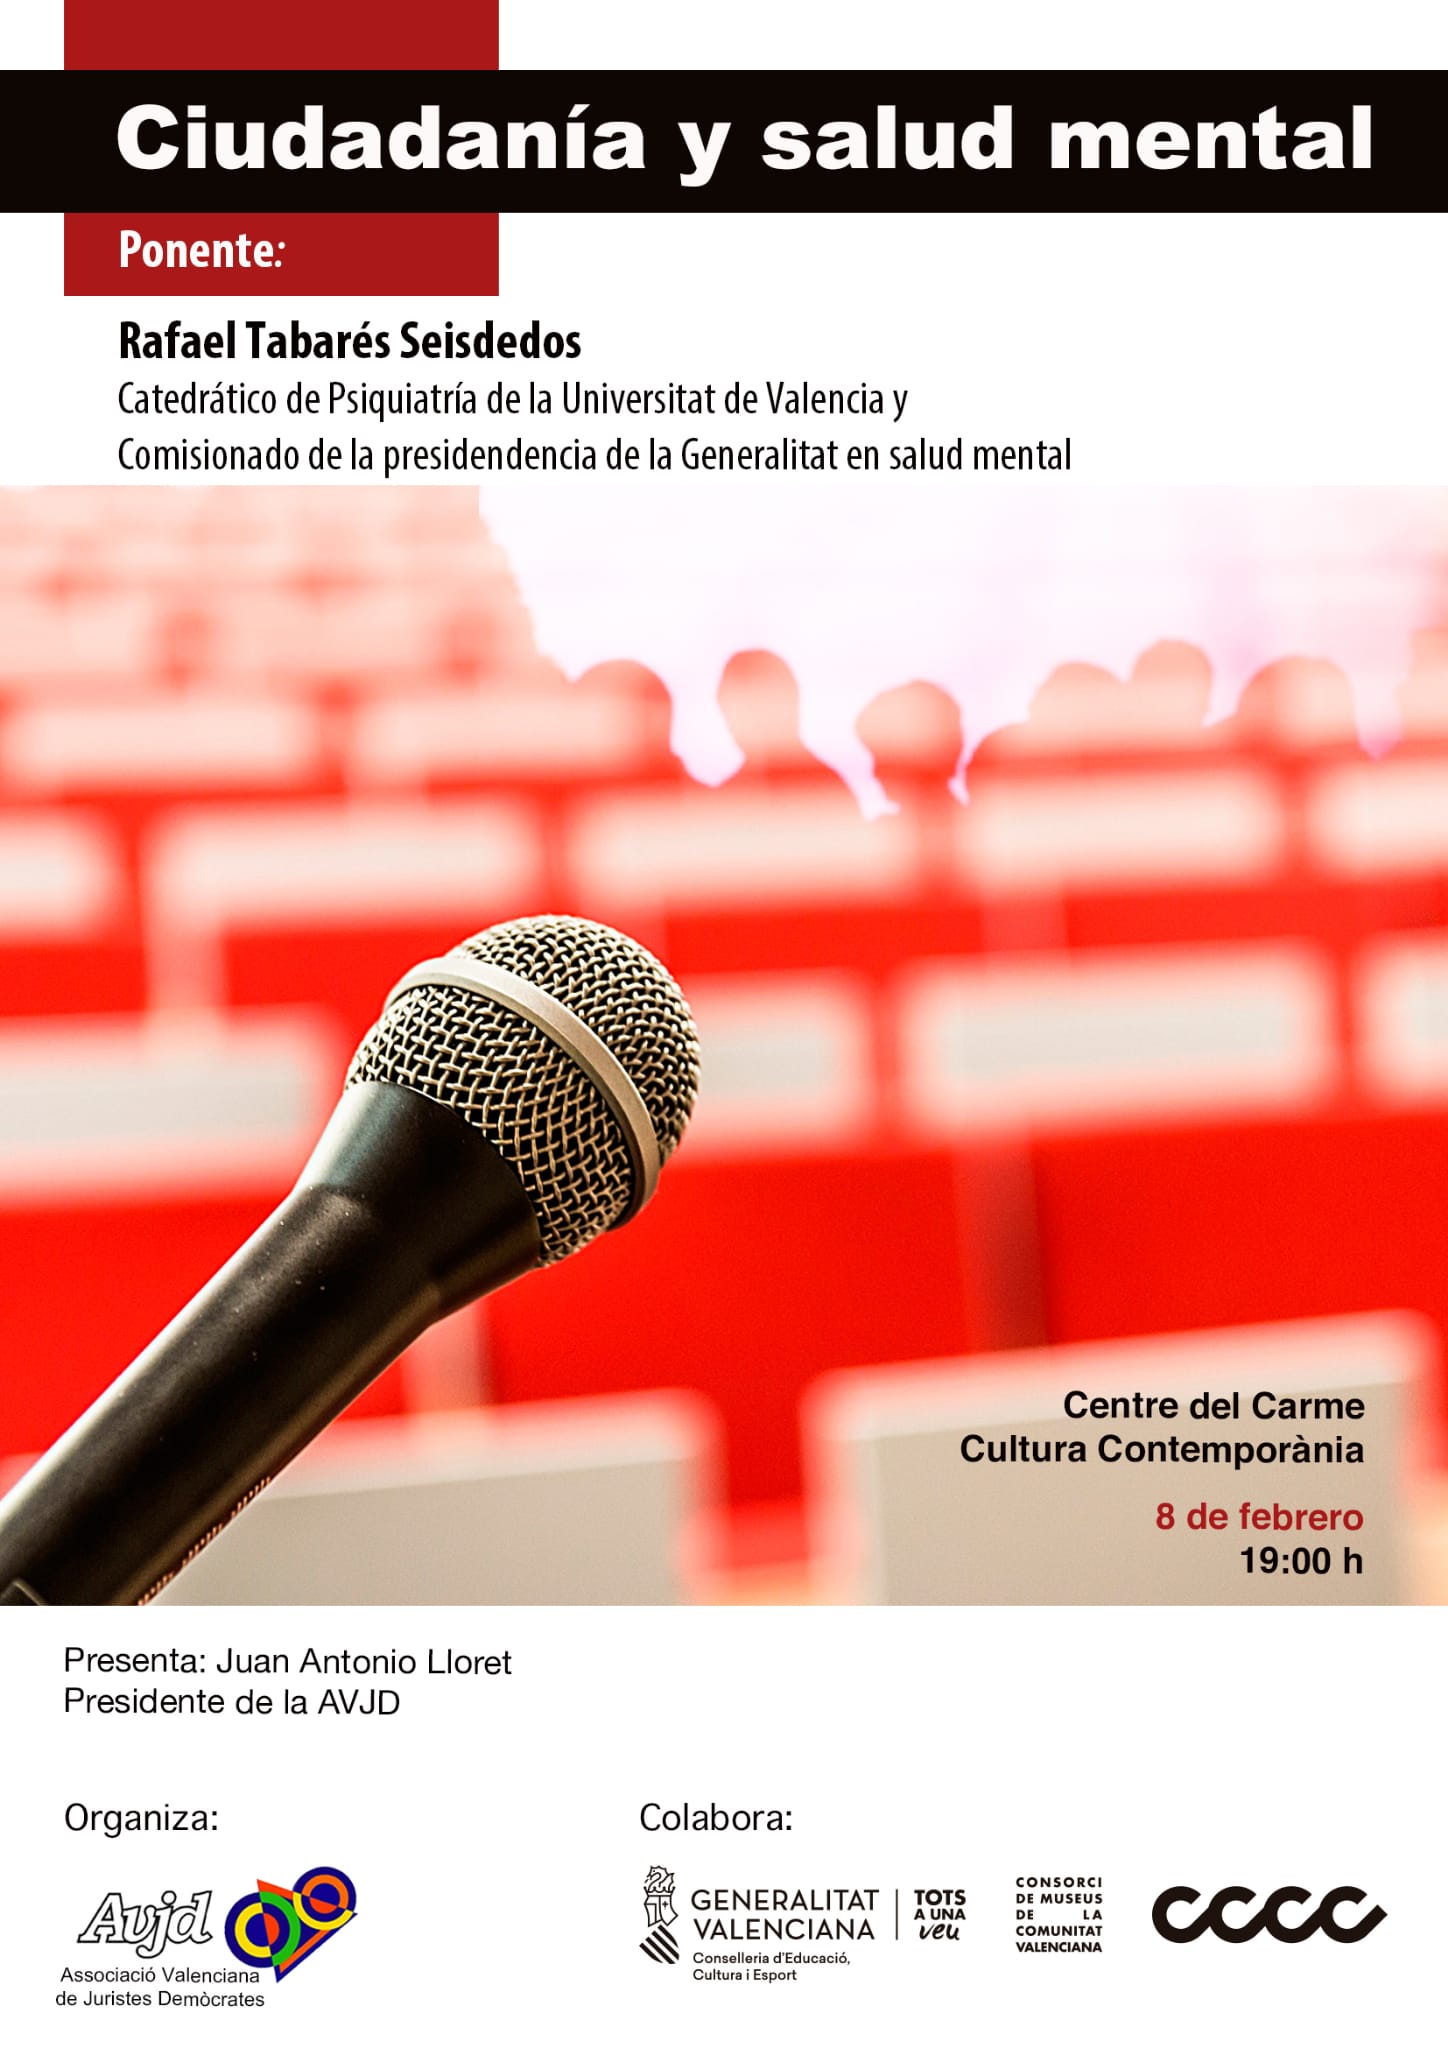 Ciudadania y Salud Mental. Conferencia Rafael Tabarés